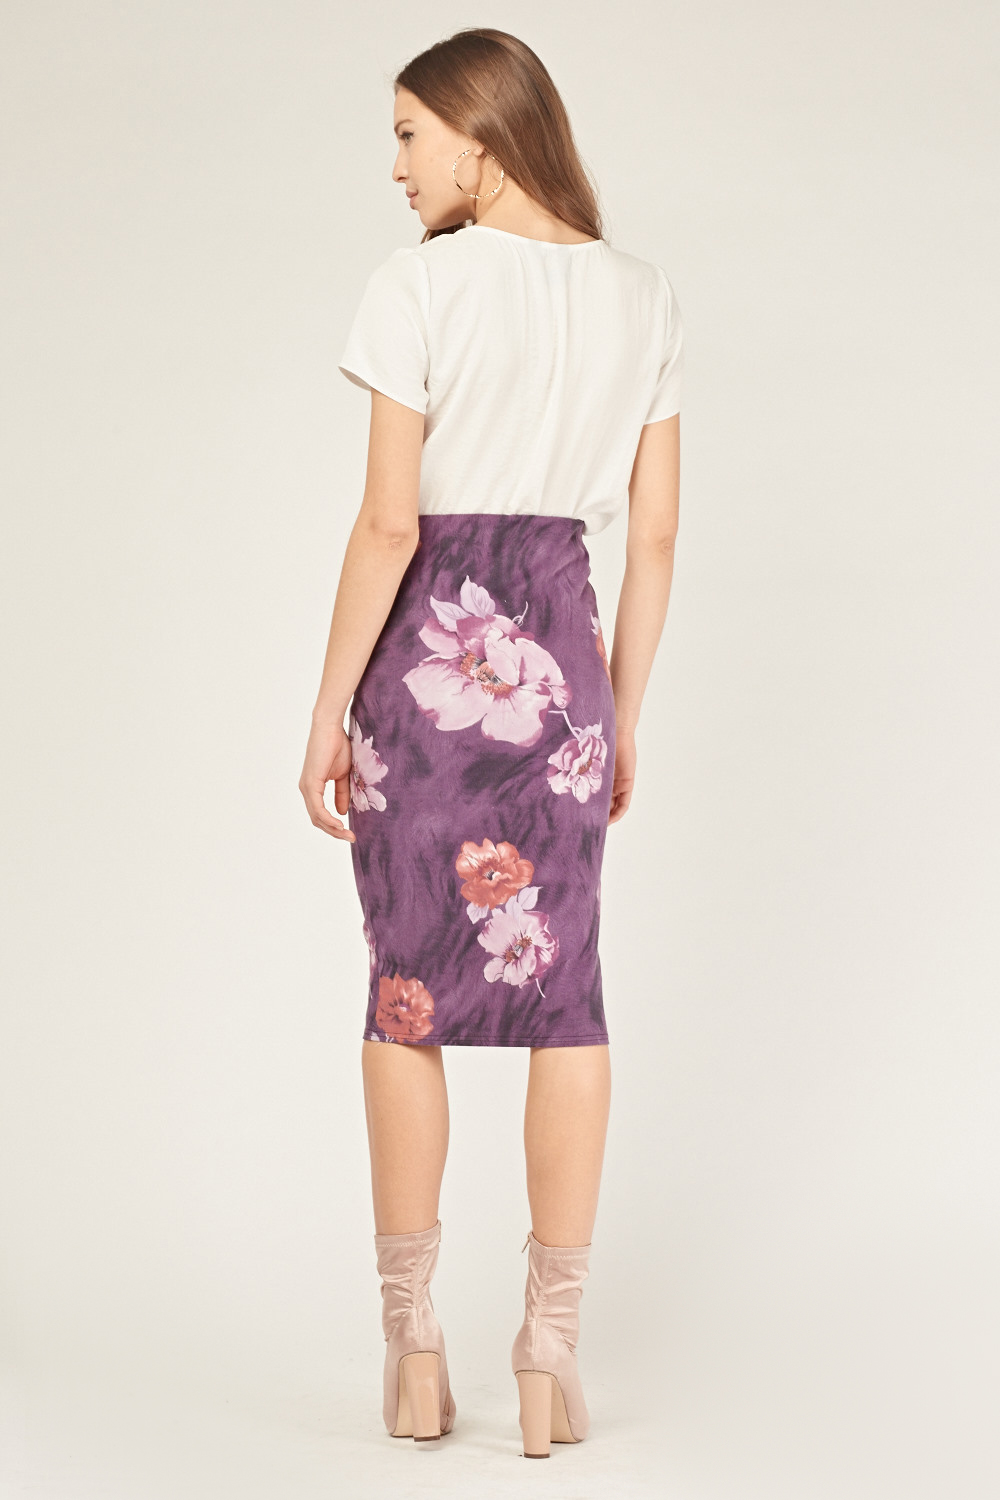 Purple Floral Midi Skirt - Just $7